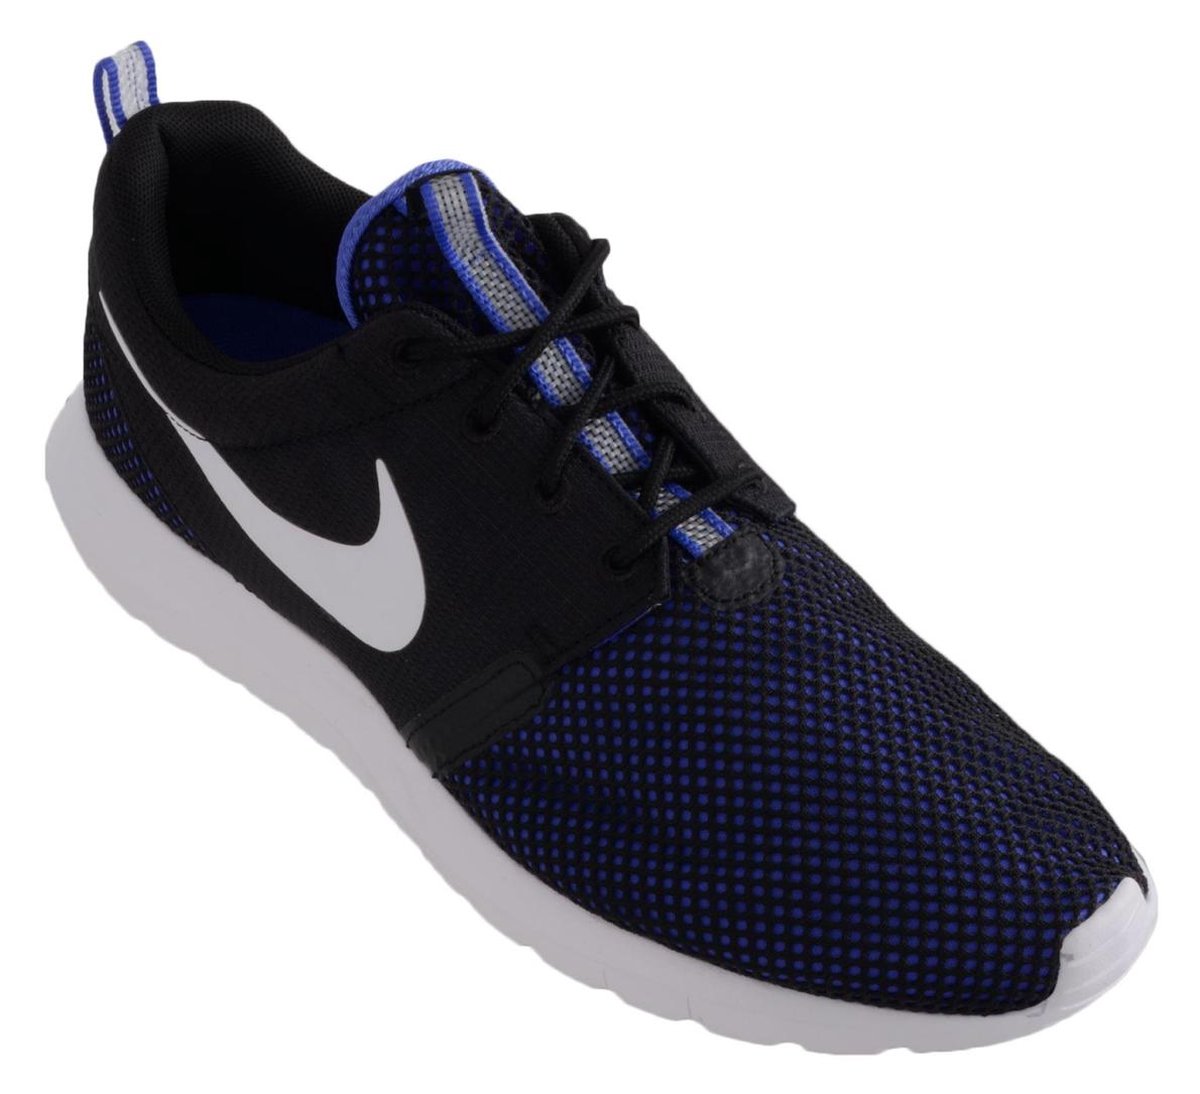 Vergelijken Raadplegen Dollar Nike Roshe Run NM BR - Sneakers - Heren - Maat 46 - zwart/paars/wit |  bol.com